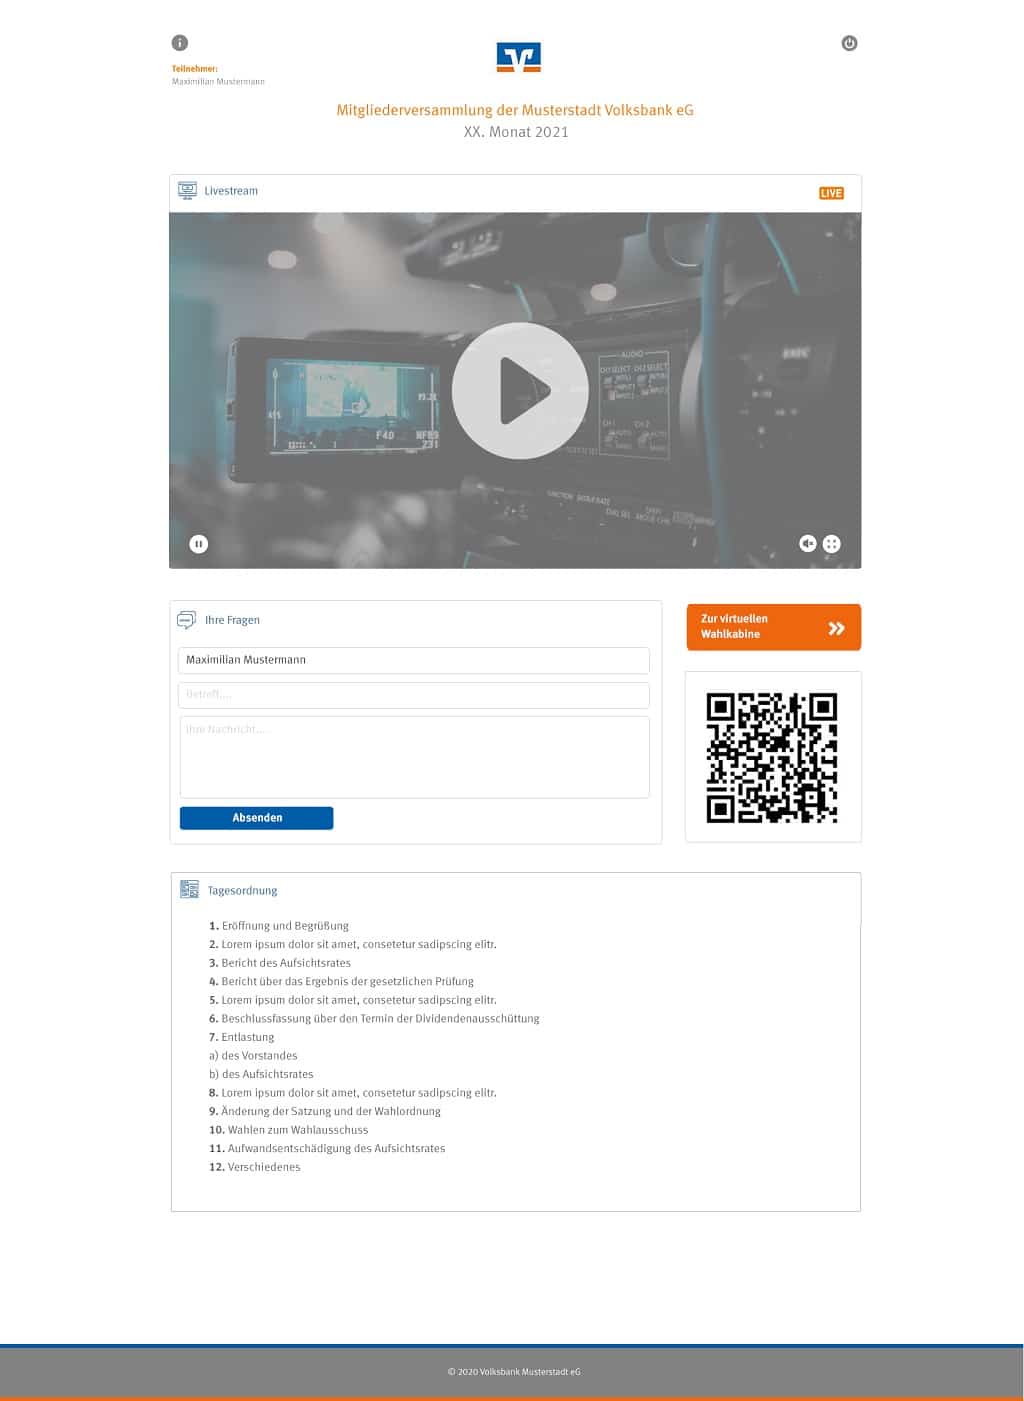 Moodulares System von Guest-One: Anmeldung, Live- Streaming-Plattform und Wahlkabine